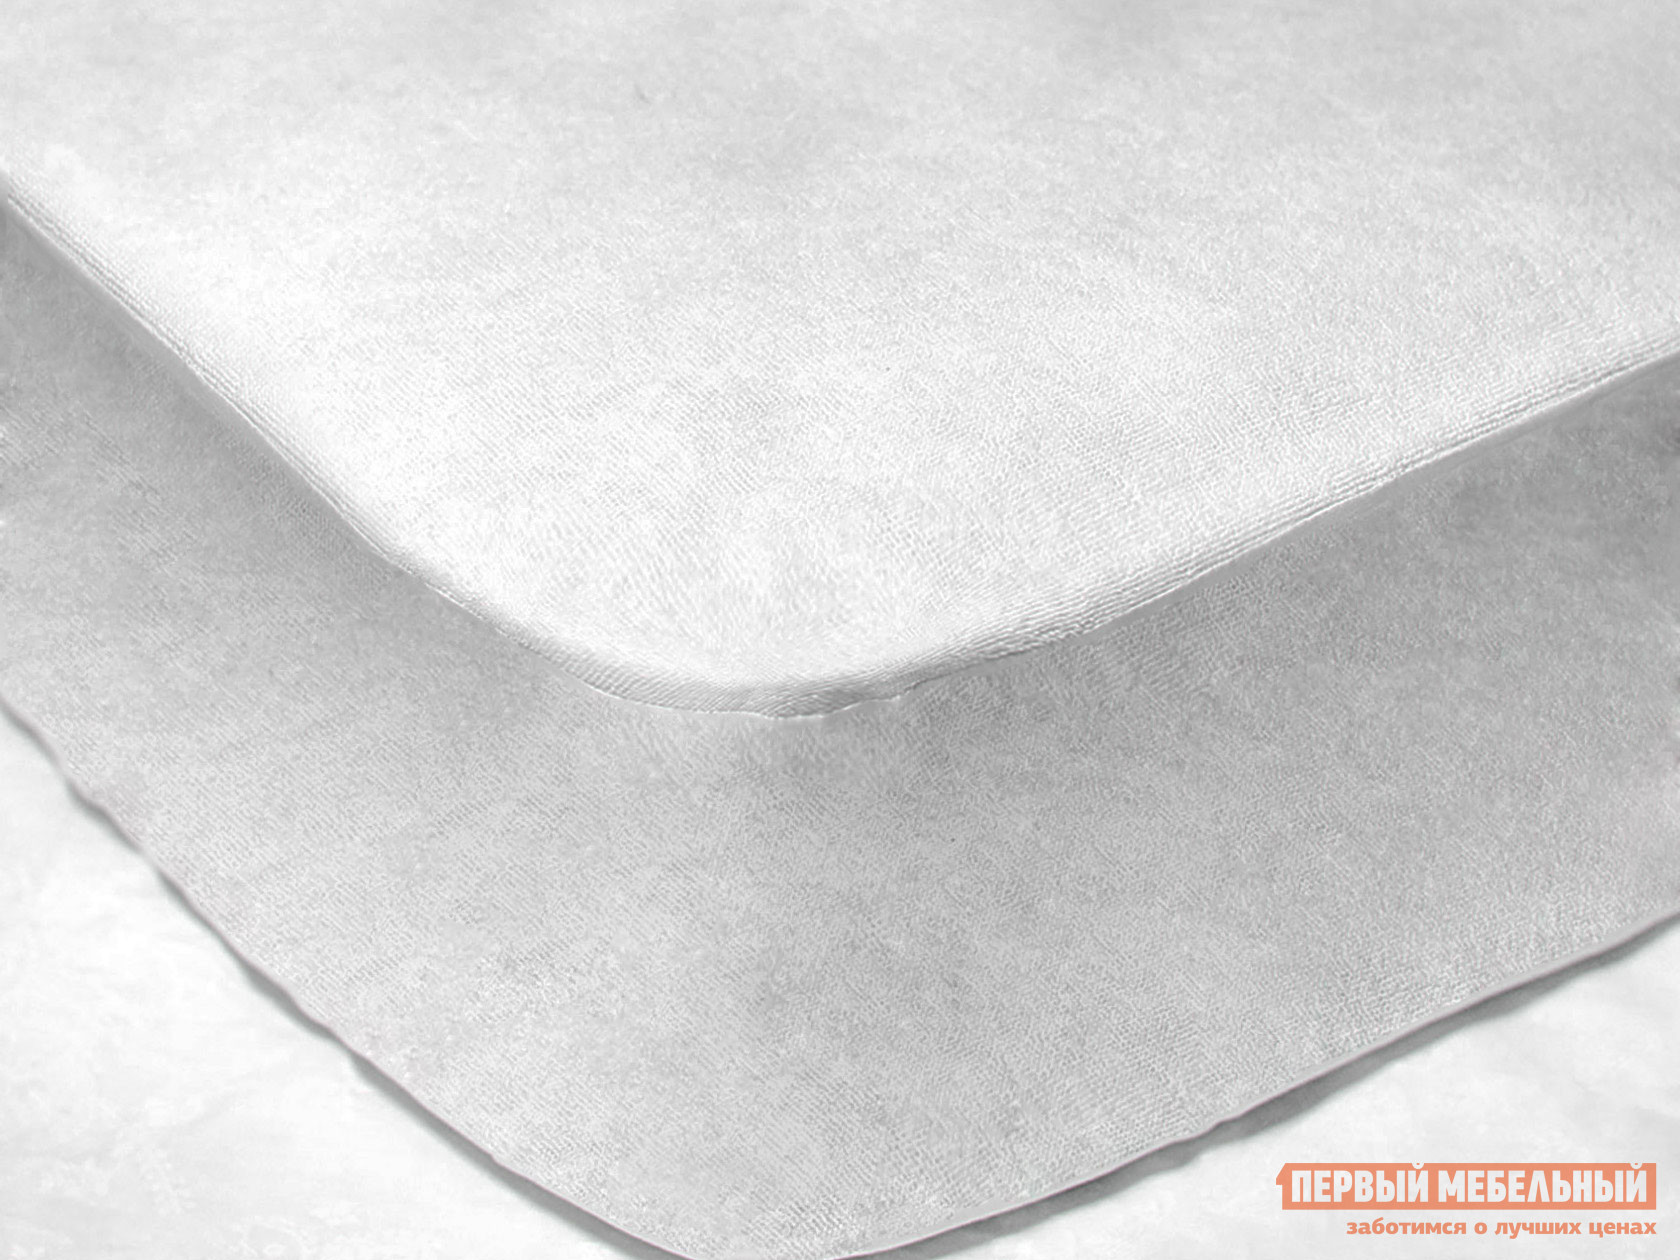 Чехол для матраса  Фулл протекшн с бортом Белый махровый, 1800 Х 2000 мм от Первый Мебельный